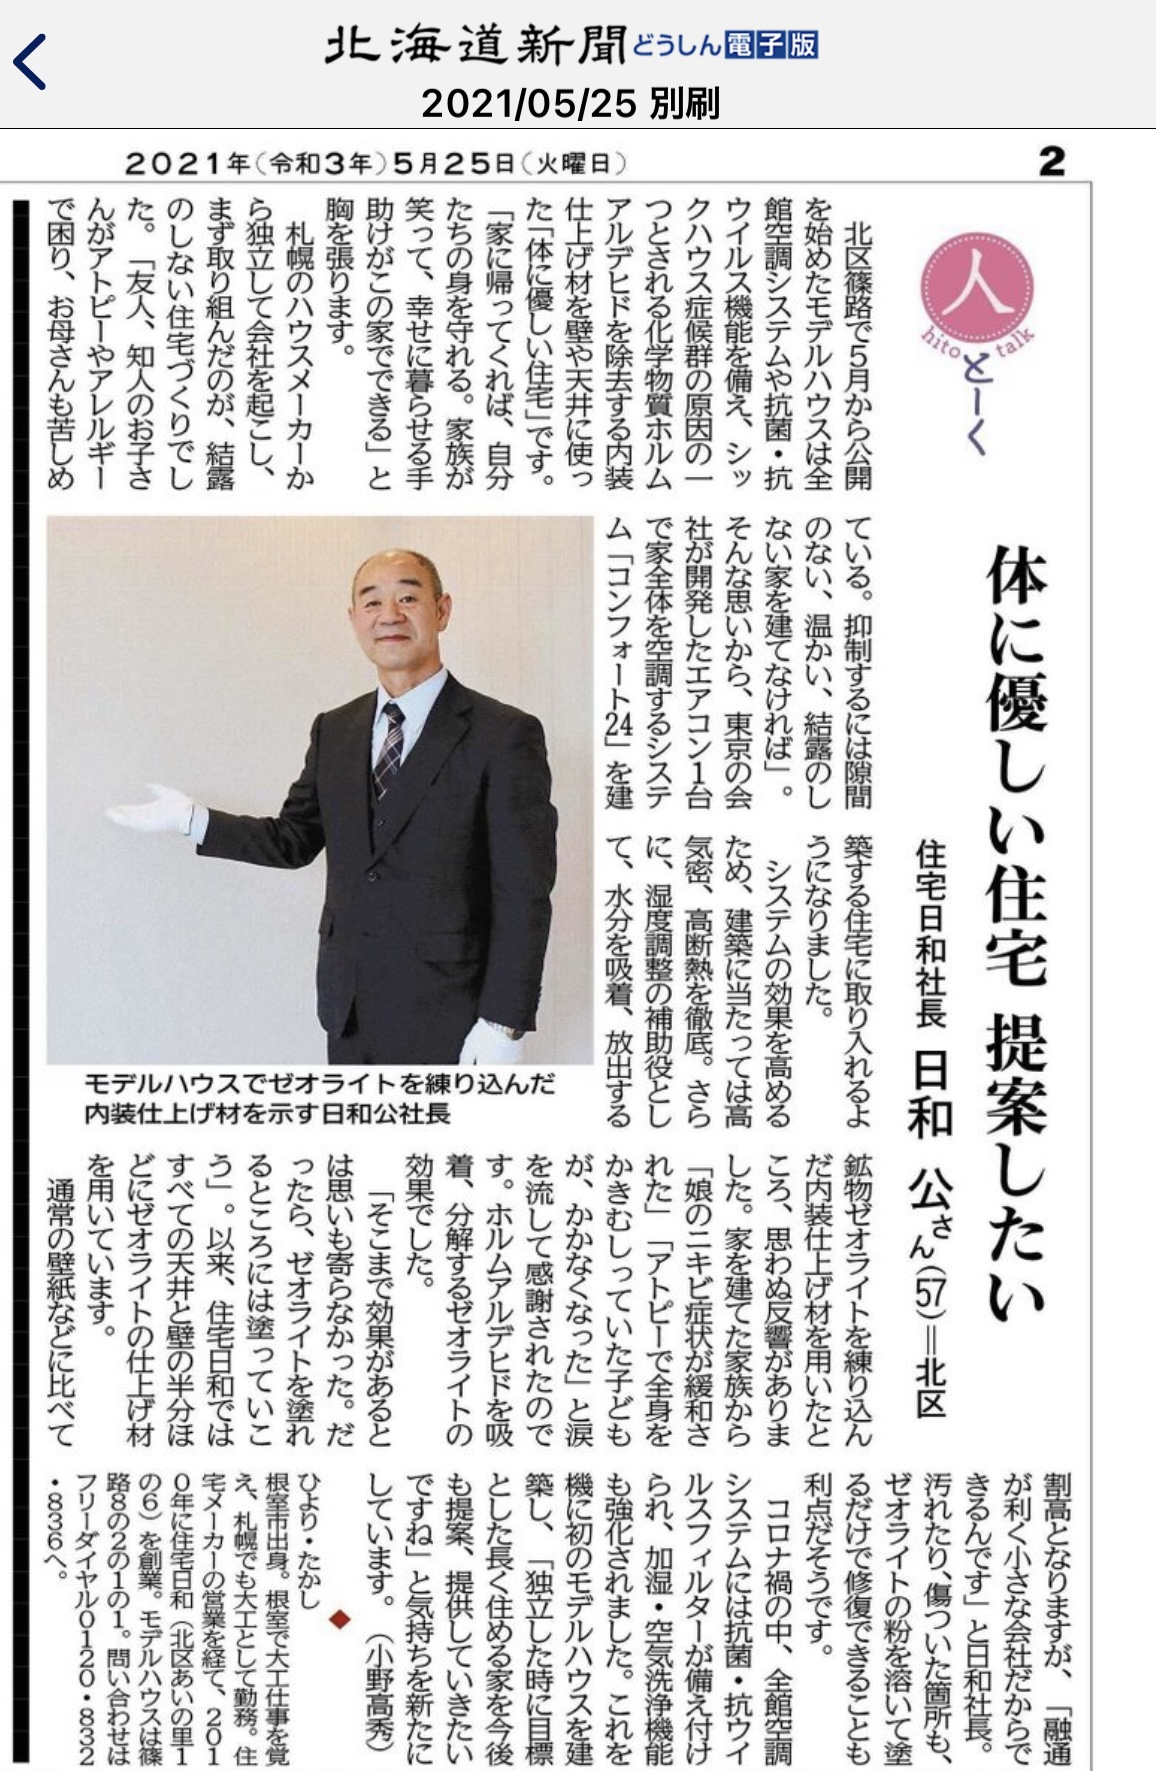 【お知らせ】2021年5月25日(火) 北海道新聞「さっぽろ10区(とーく)」に住宅日和が掲載になりました！